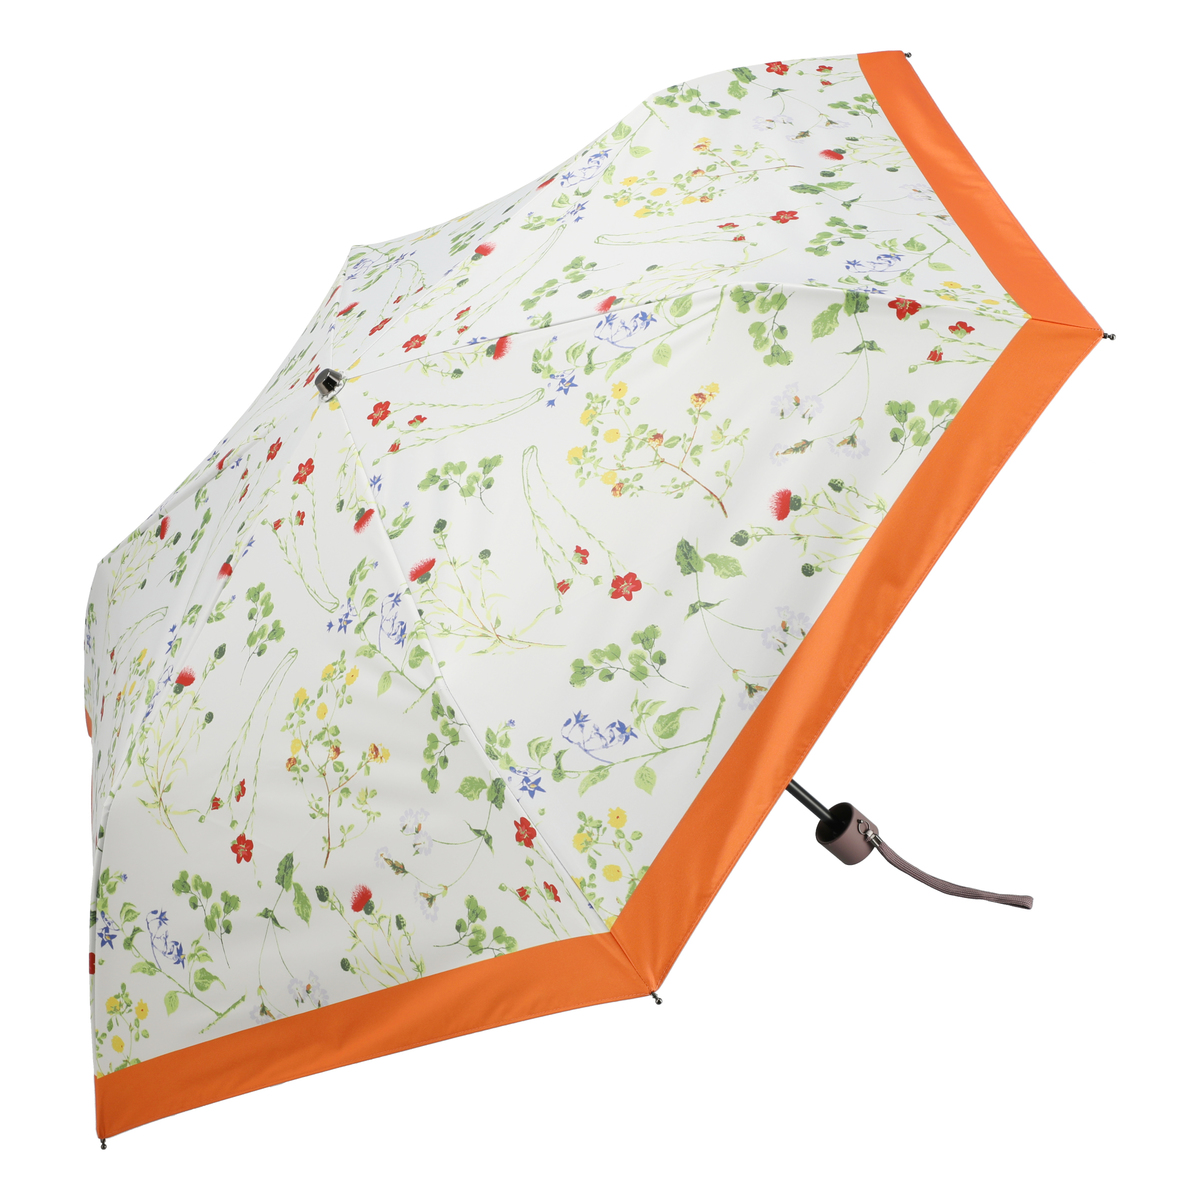  ルナジュメール UV+1級遮光+晴雨兼用ボタニカル柄折傘  オレンジ